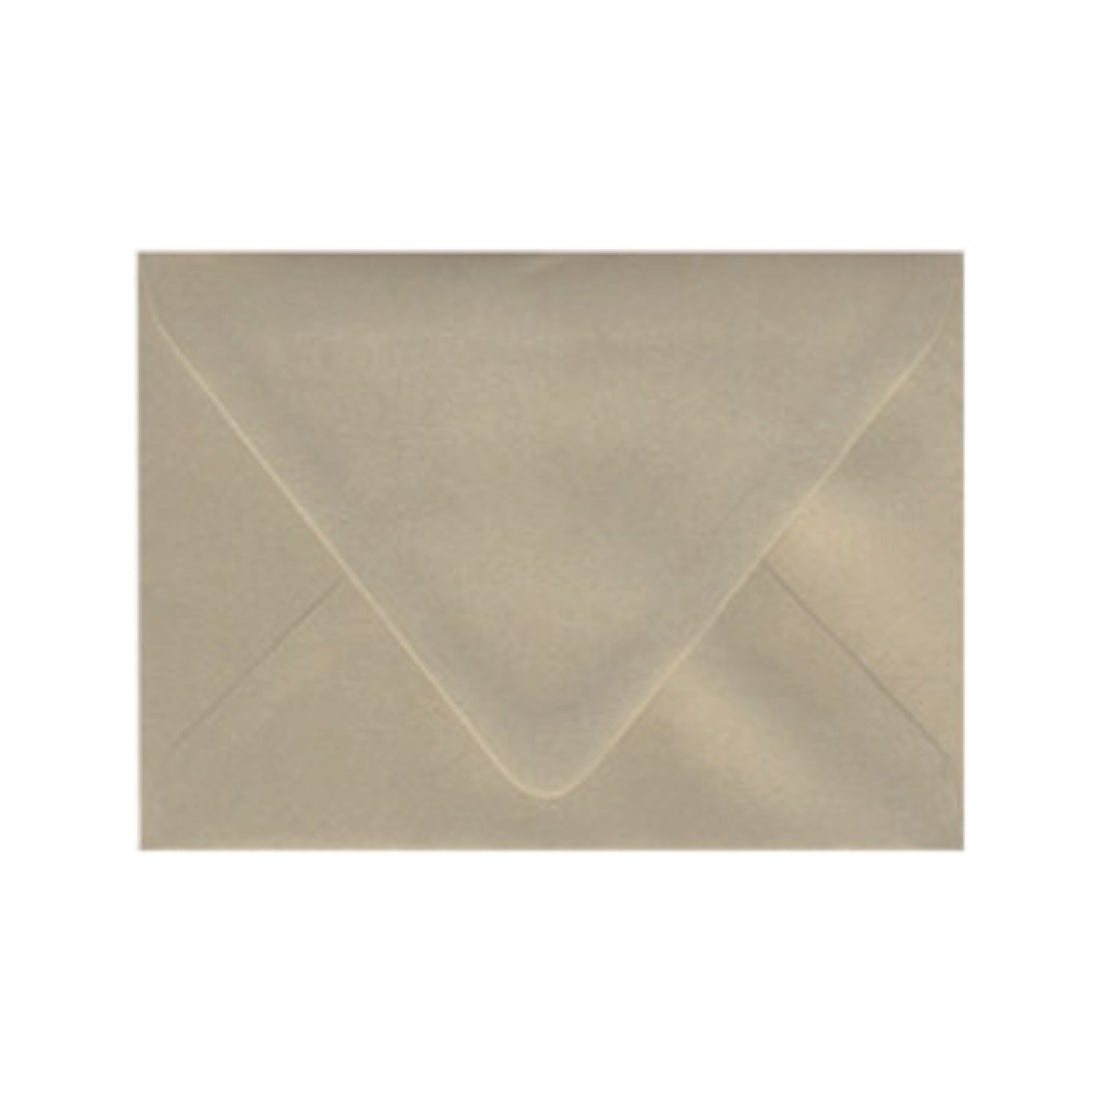 Gold Leaf Envelopes - Pack of 25